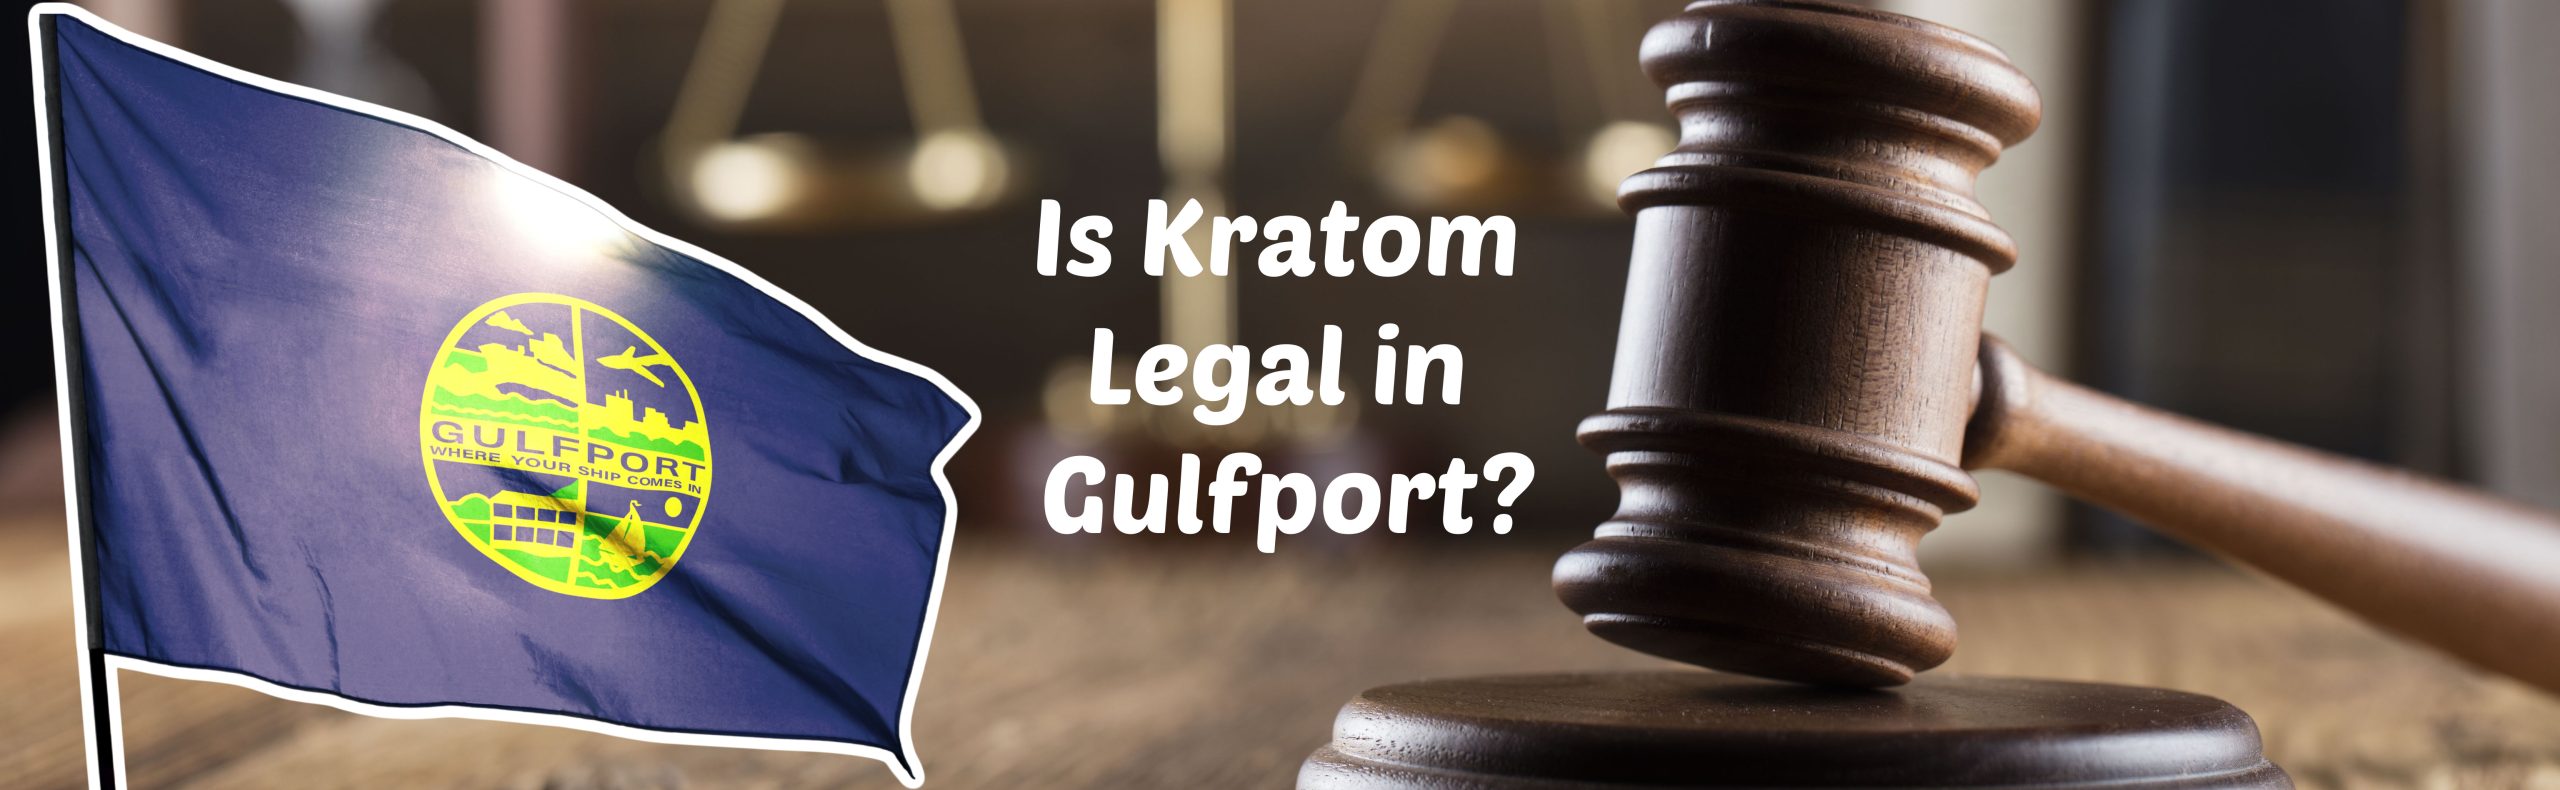 The Best Kratom Shops To Buy Kratom in Gulfport, Mississippi